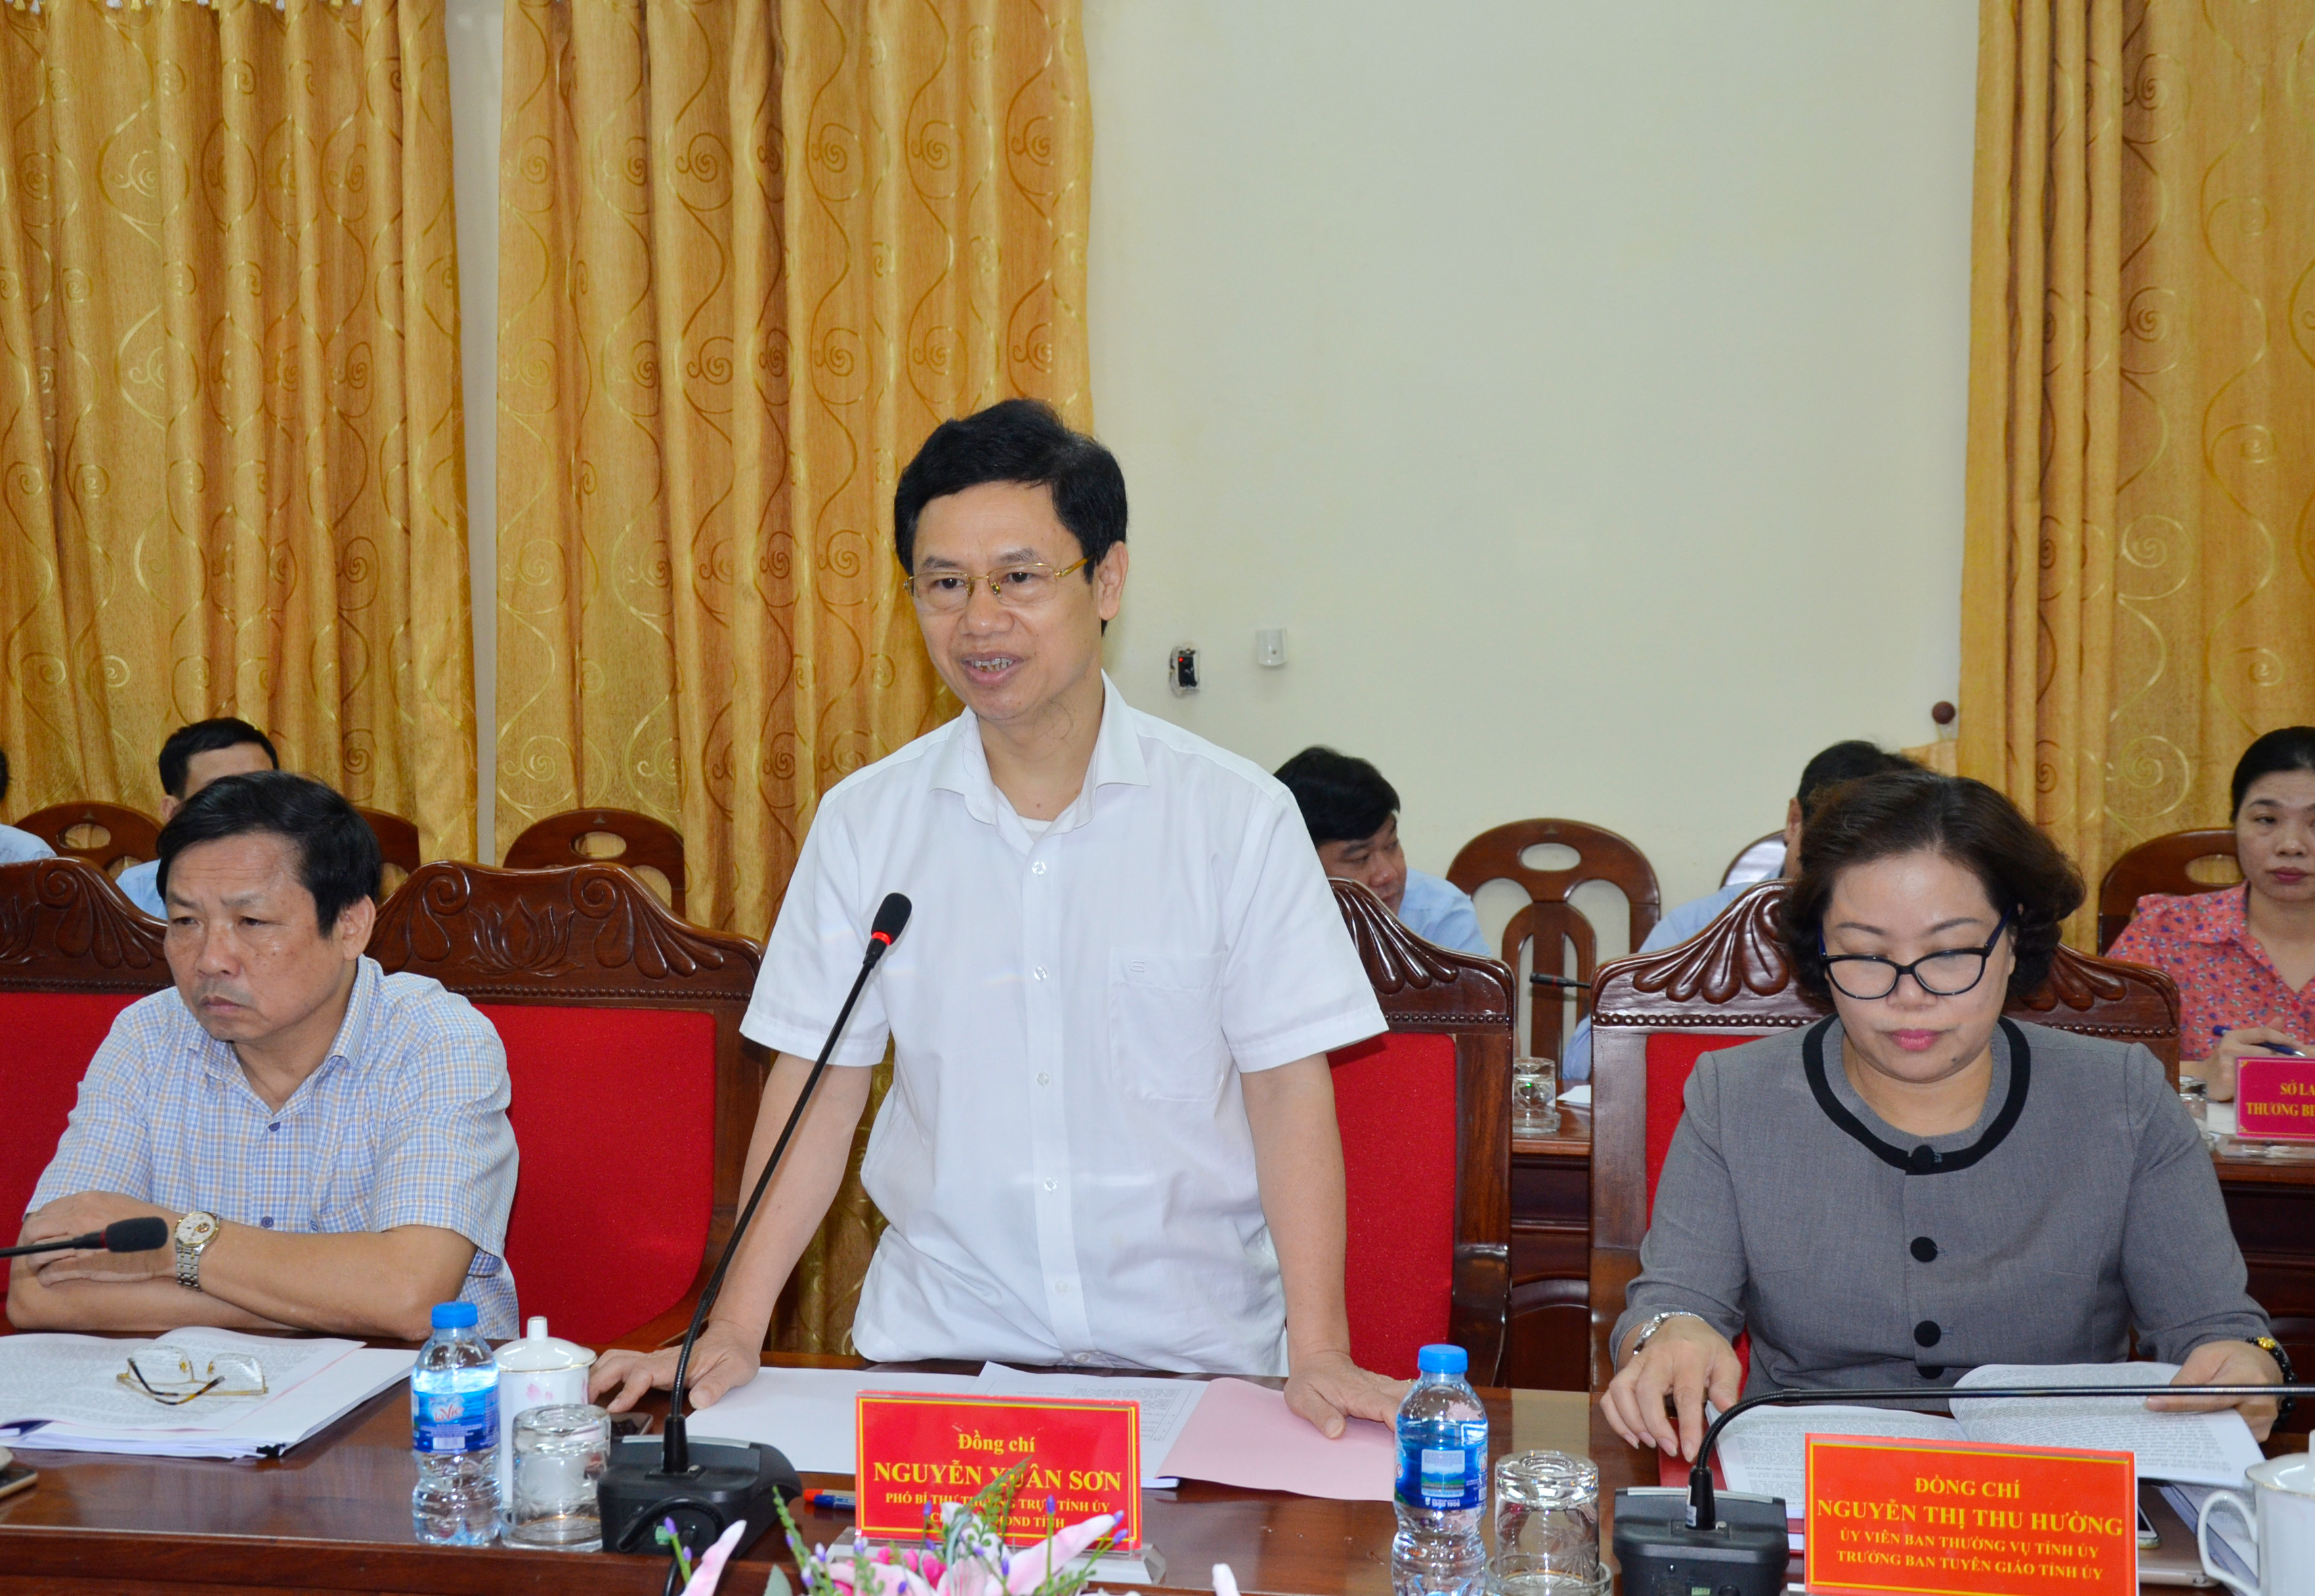 Phó Bí thư Thường trực Nguyễn Xuân Sơn phát biểu tại cuộc làm việc. Ảnh Thanh Lê